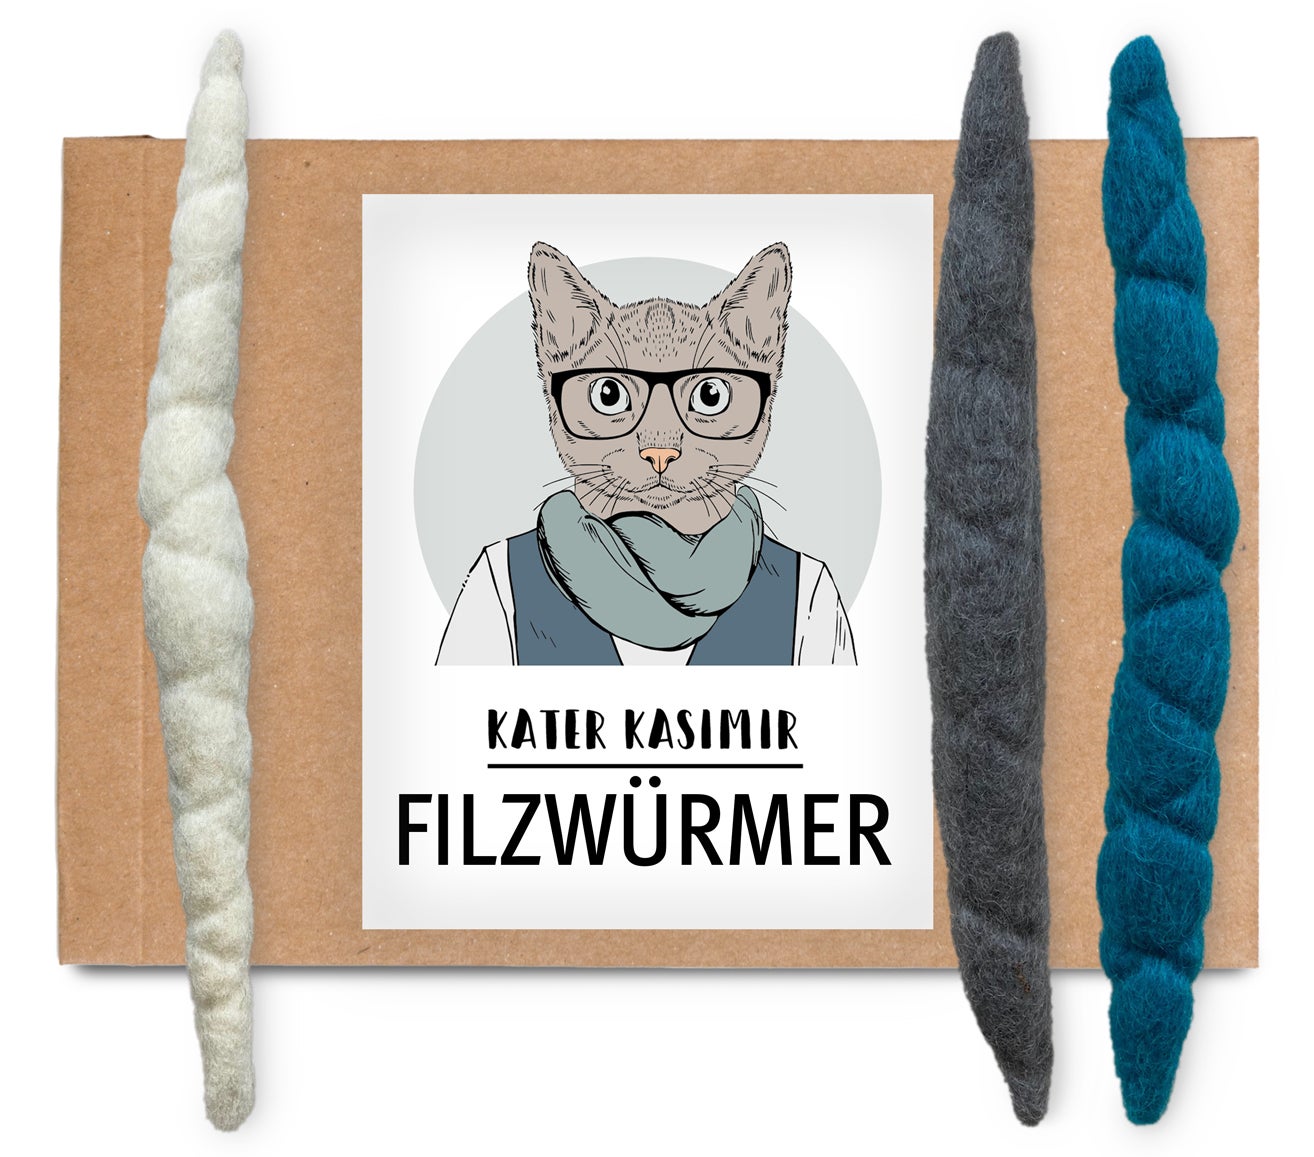 3 handgerollte Filzwürmer aus reiner Schurwolle. Von Hand und mit Liebe in Deutschland gefertigt. Als Spielball für Katzen aus Filz